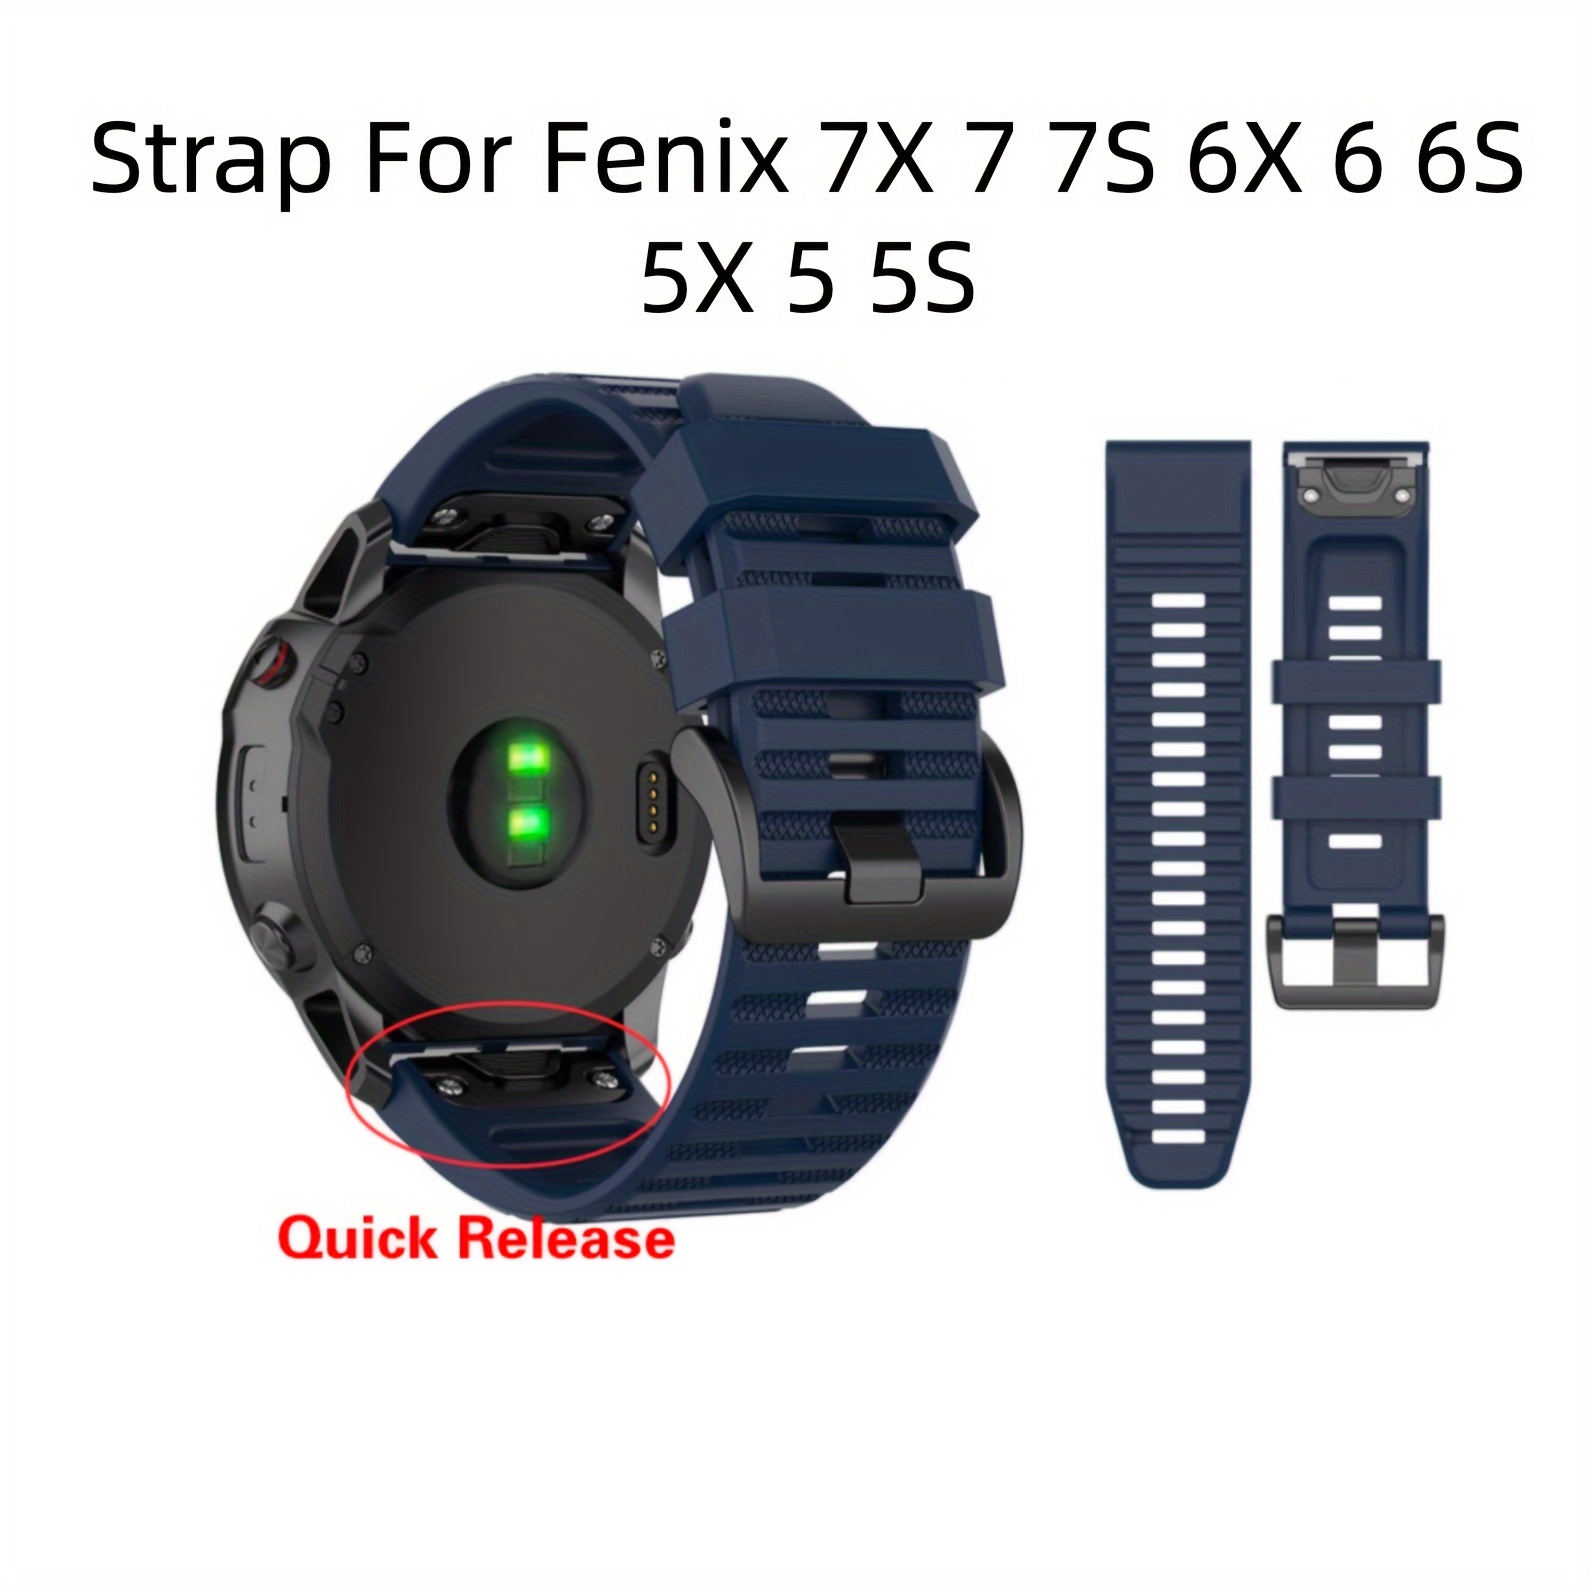 Silicone Strap For Garmin Fenix 5 6 7 Smart Watch Quick Release Band Straps  For Garmin Fenix 5s 6s 7s 5x 6x 7x Bracelet correa